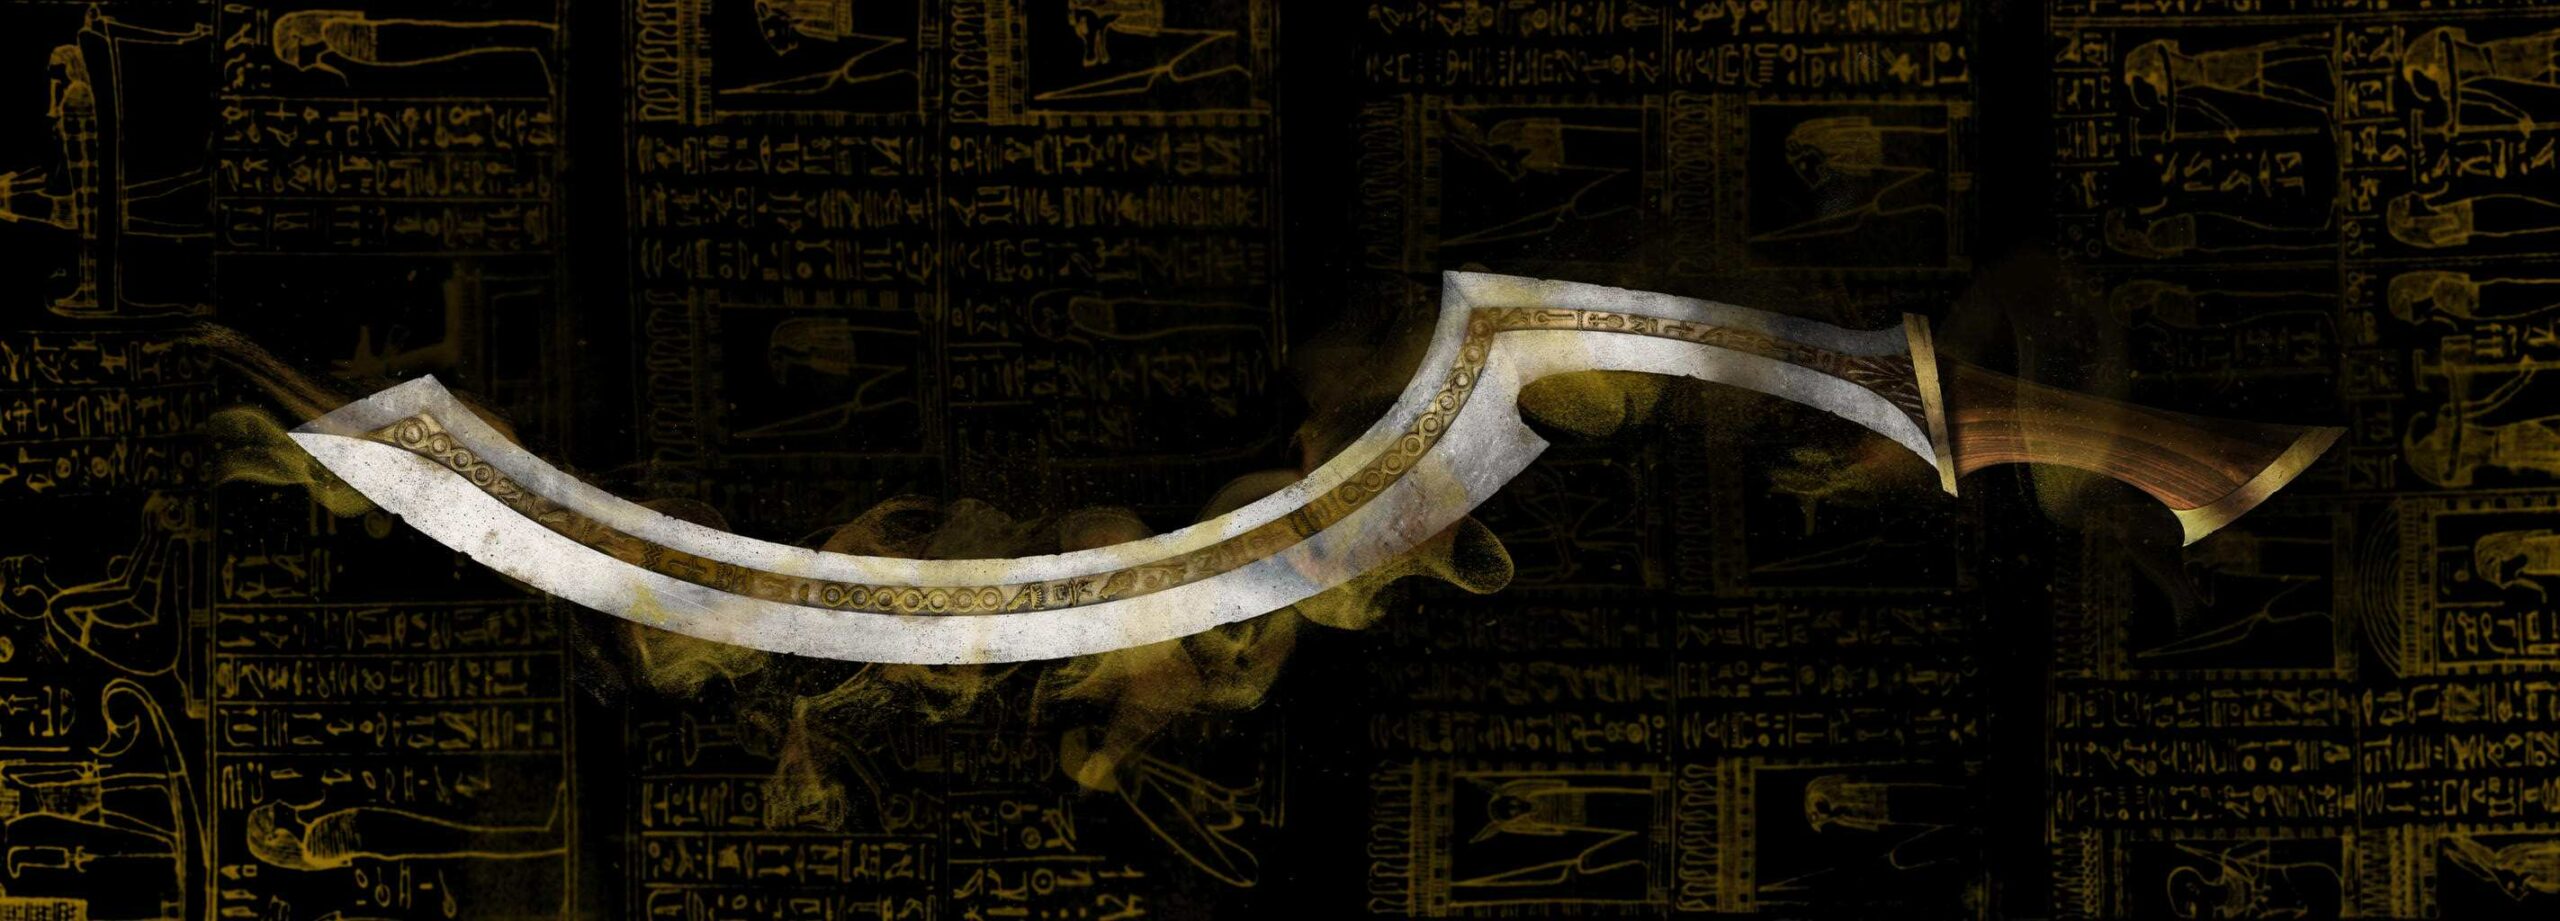 Кхопеш мач: легендарно оружје које је исковало историју старог Египта 2